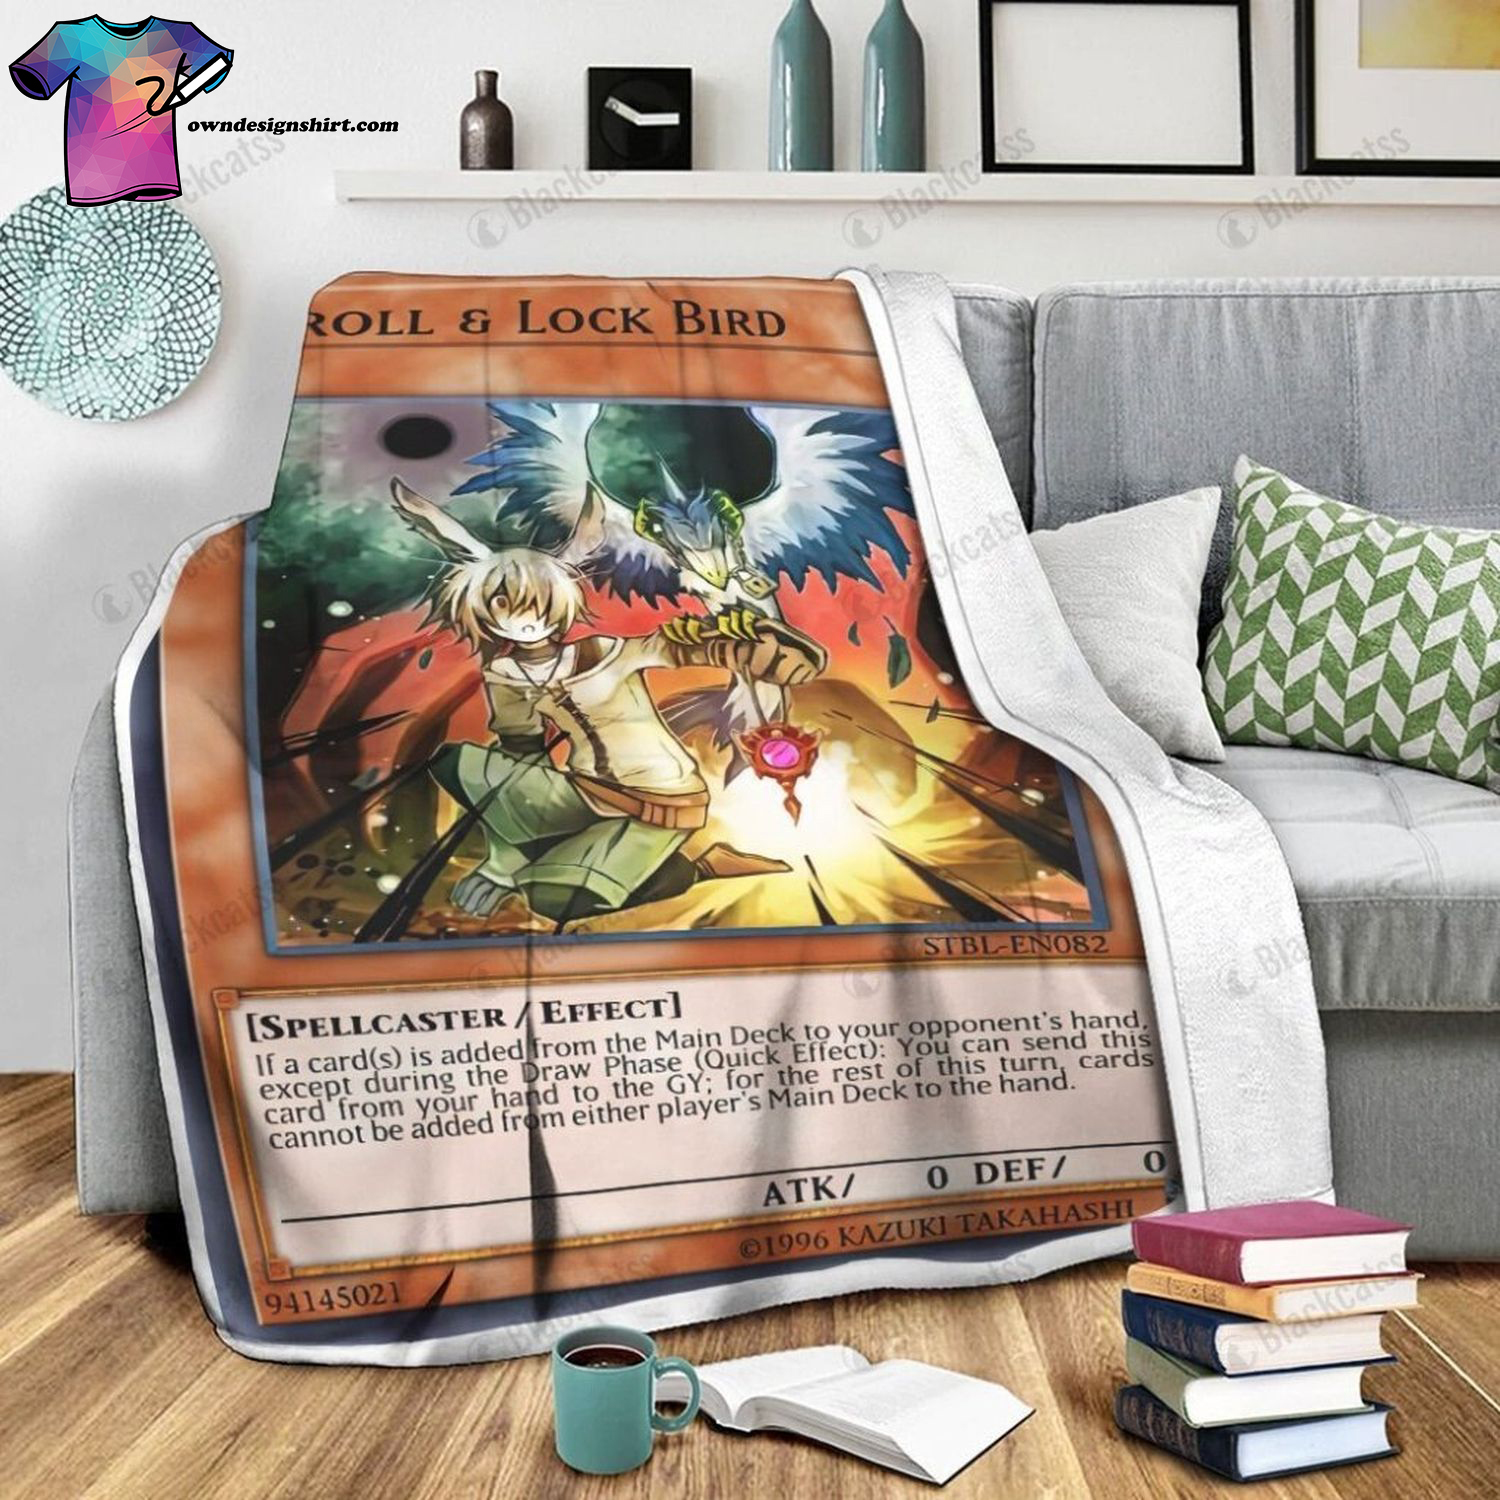 Game Yu-gi-oh Droll And Lock Bird Full Print Soft Blanket